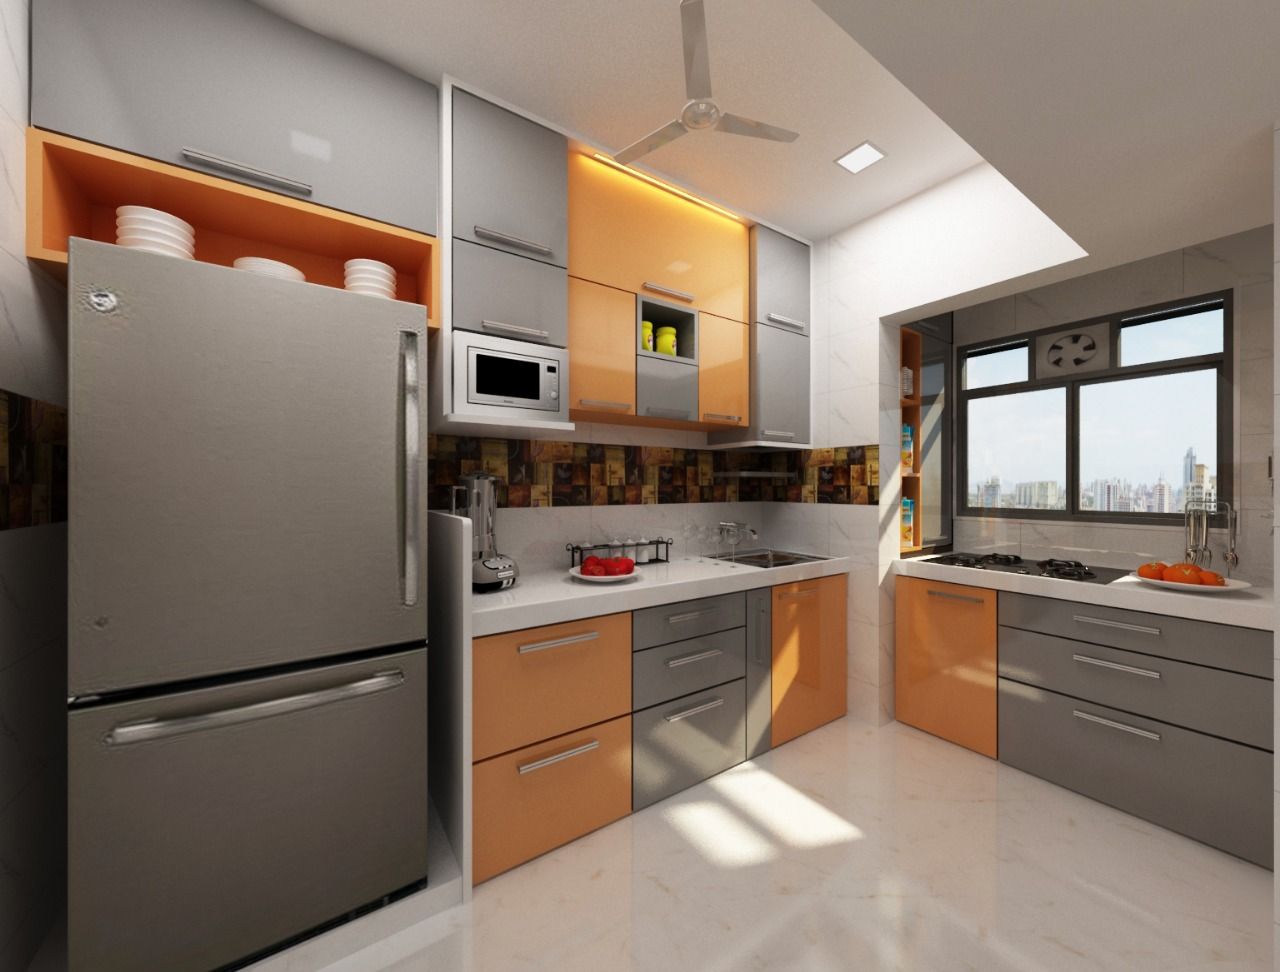 3BHK home design in Ghansoli, Mumbai , Square 4 Design & Build Square 4 Design & Build モダンな キッチン